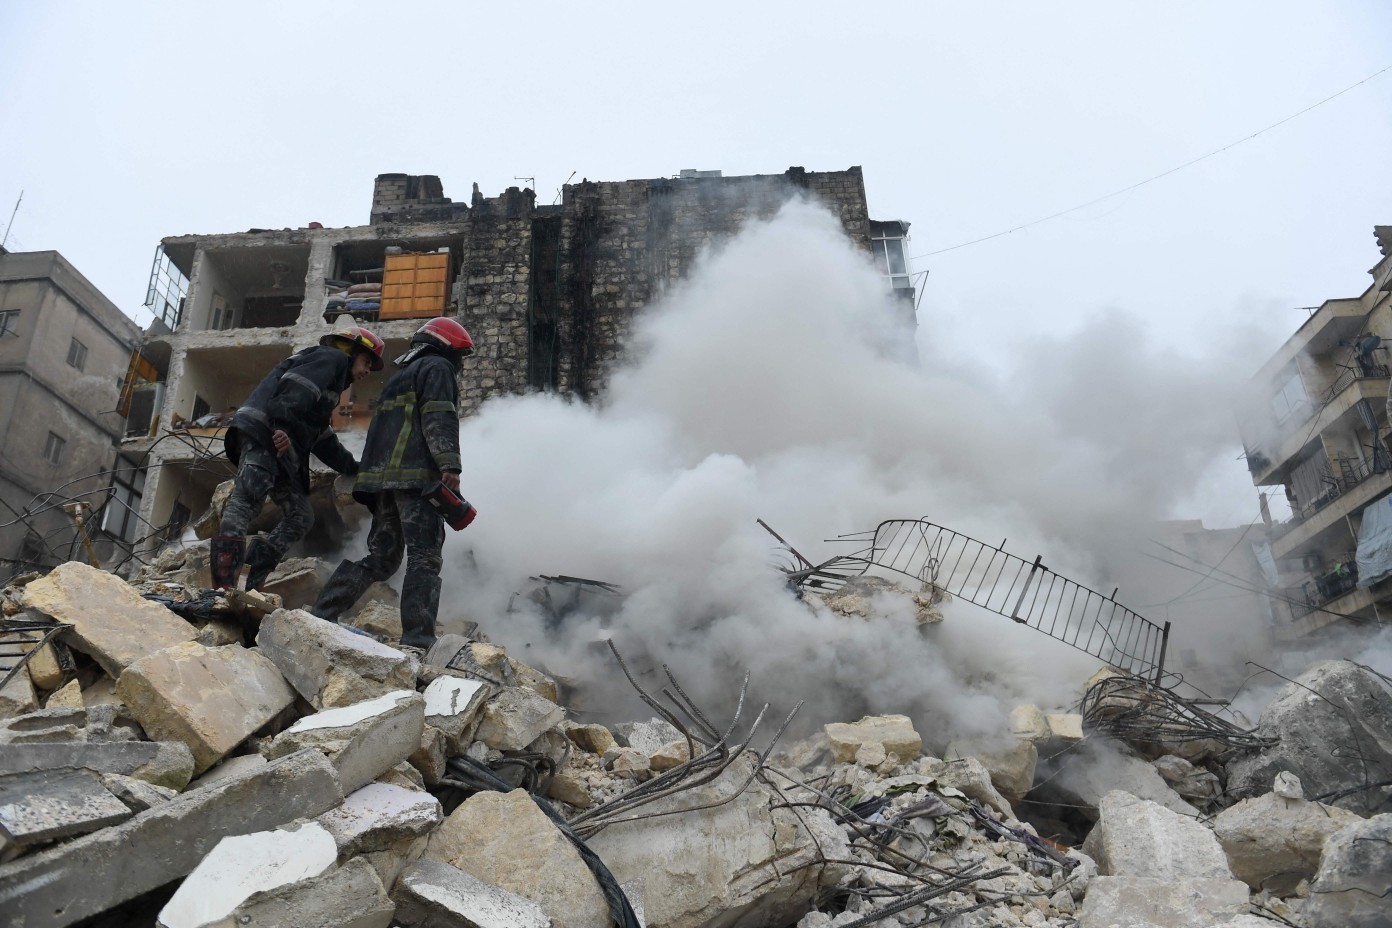 Equipes de resgate procuram sobreviventes sob os escombros de um prédio que desabou após o terremoto na cidade de Aleppo, norte da Síria — Foto: AFP